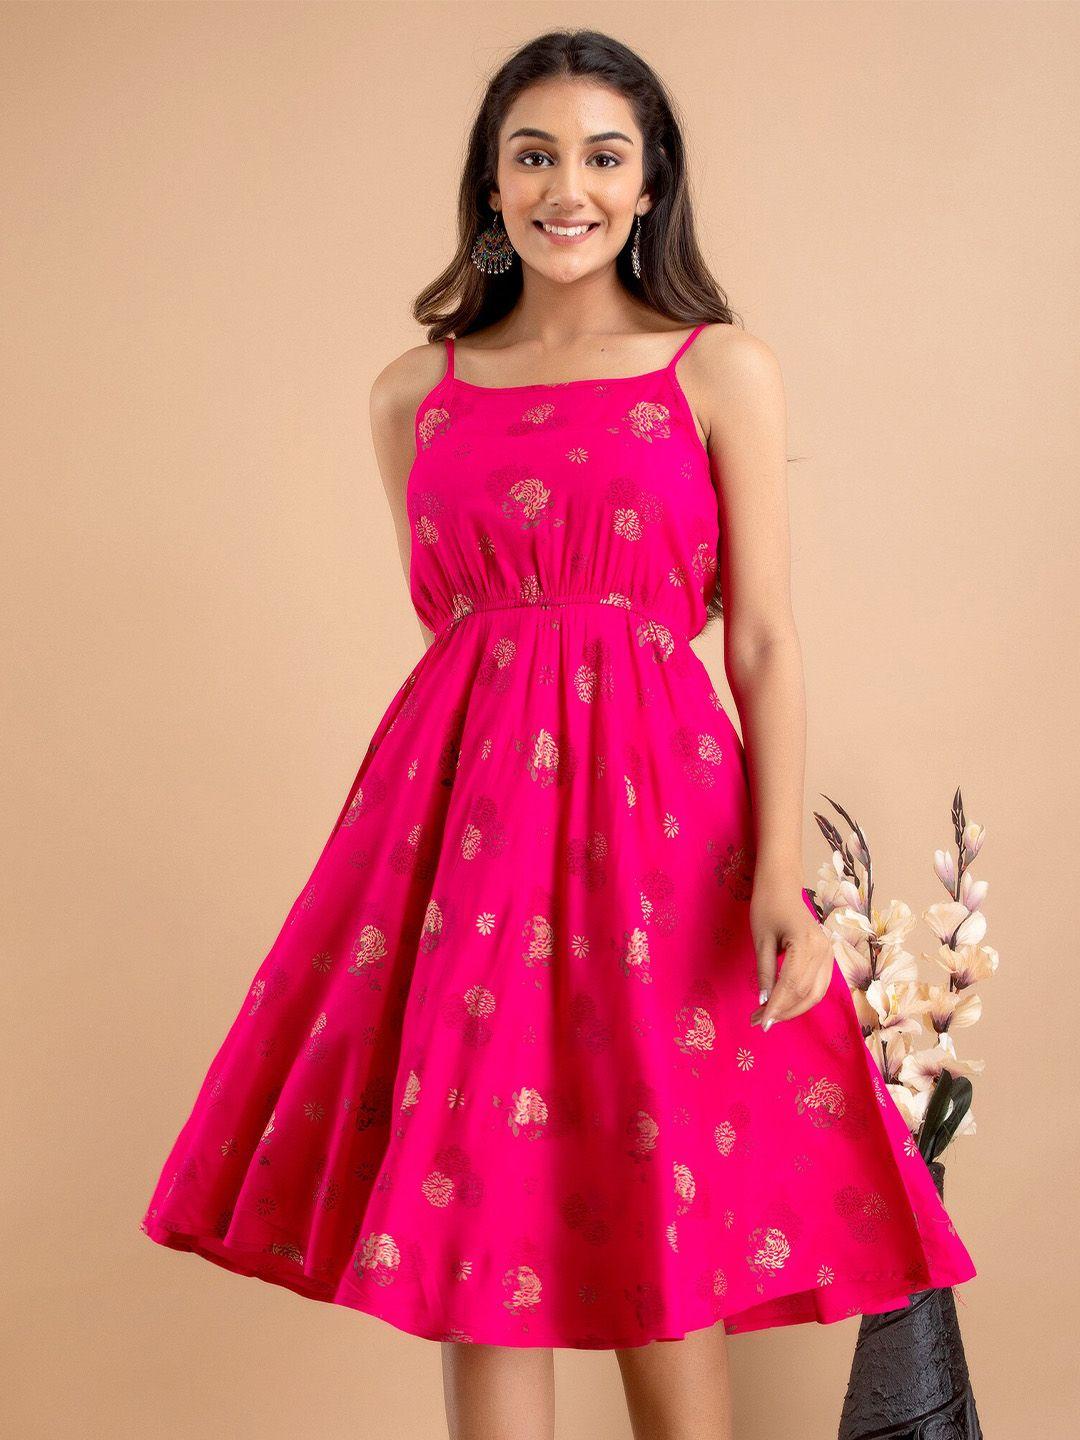 unibliss pink & vivid raspberry floral print fit & flare midi dress